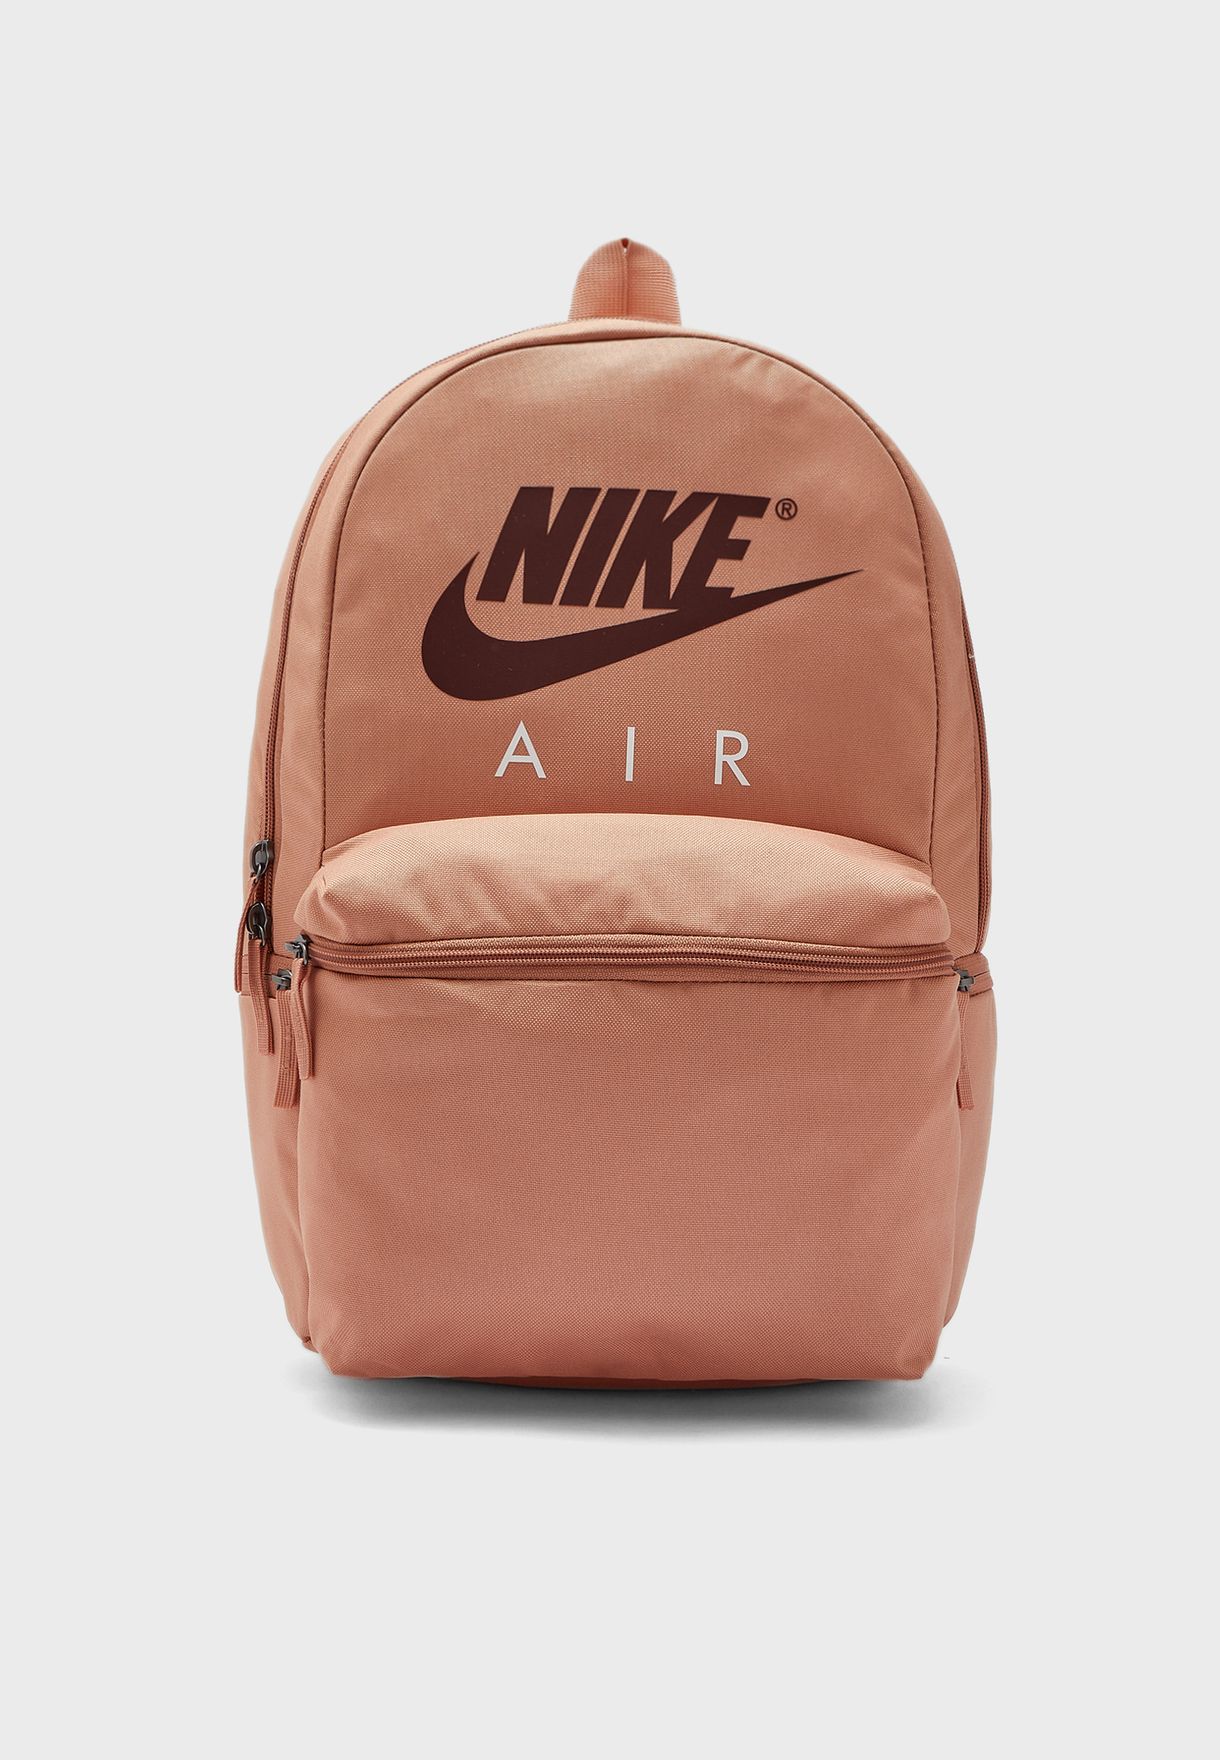 nike air backpack brown